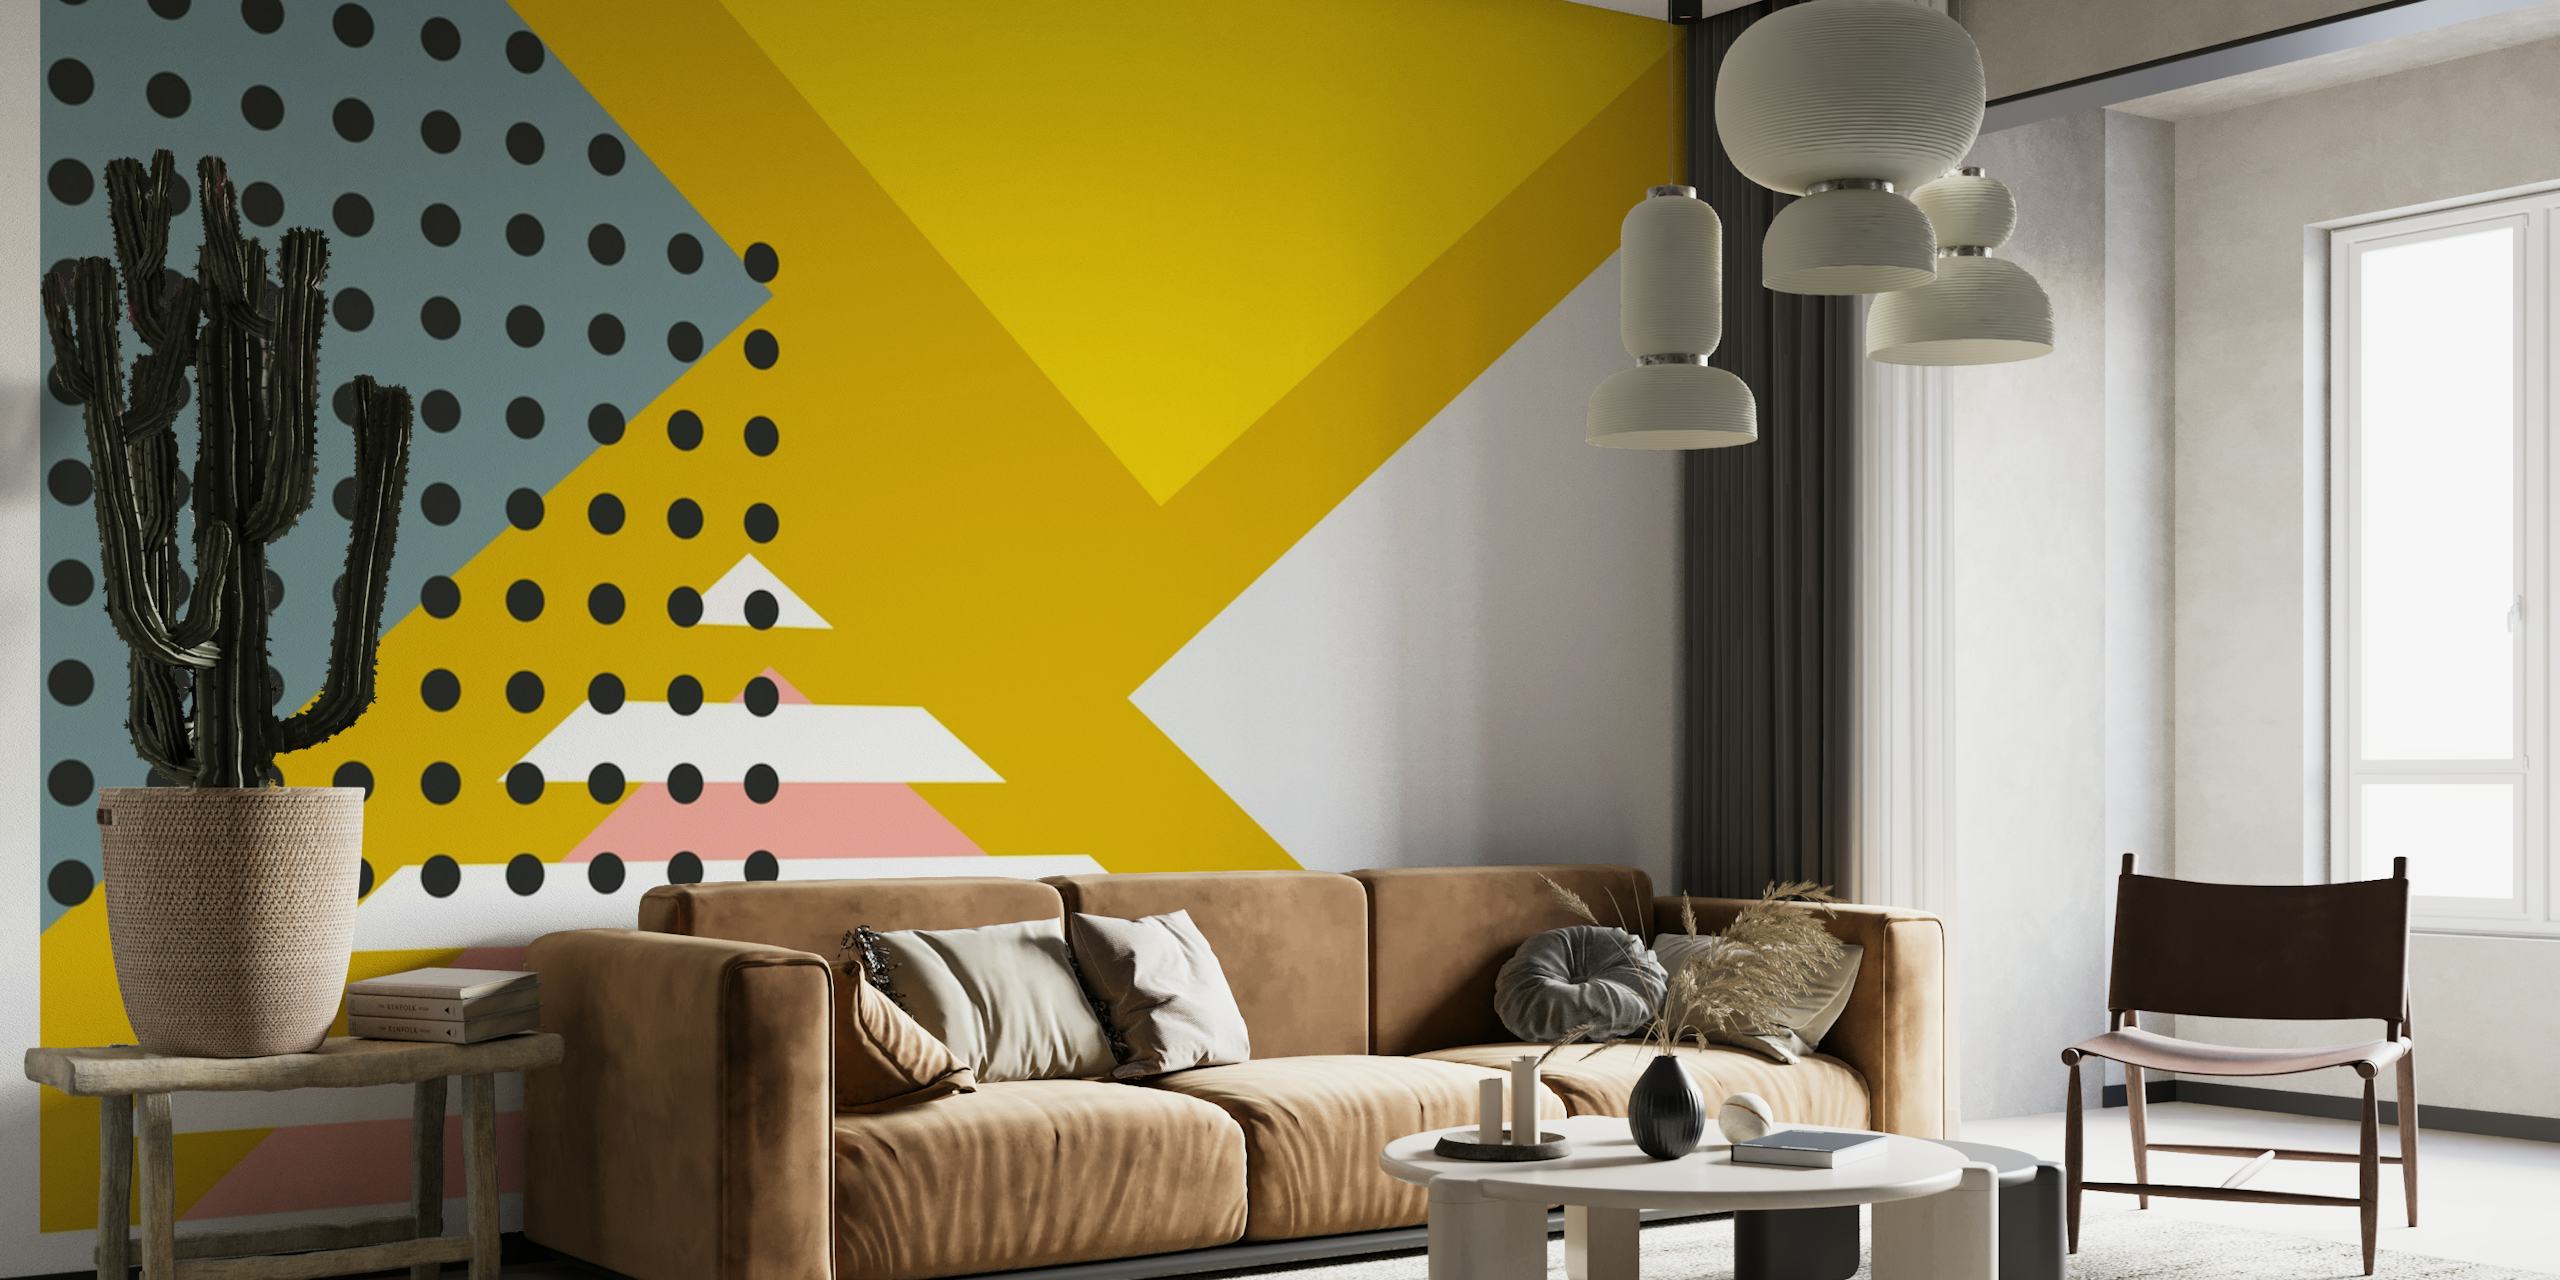 Super minimalist wallpaper